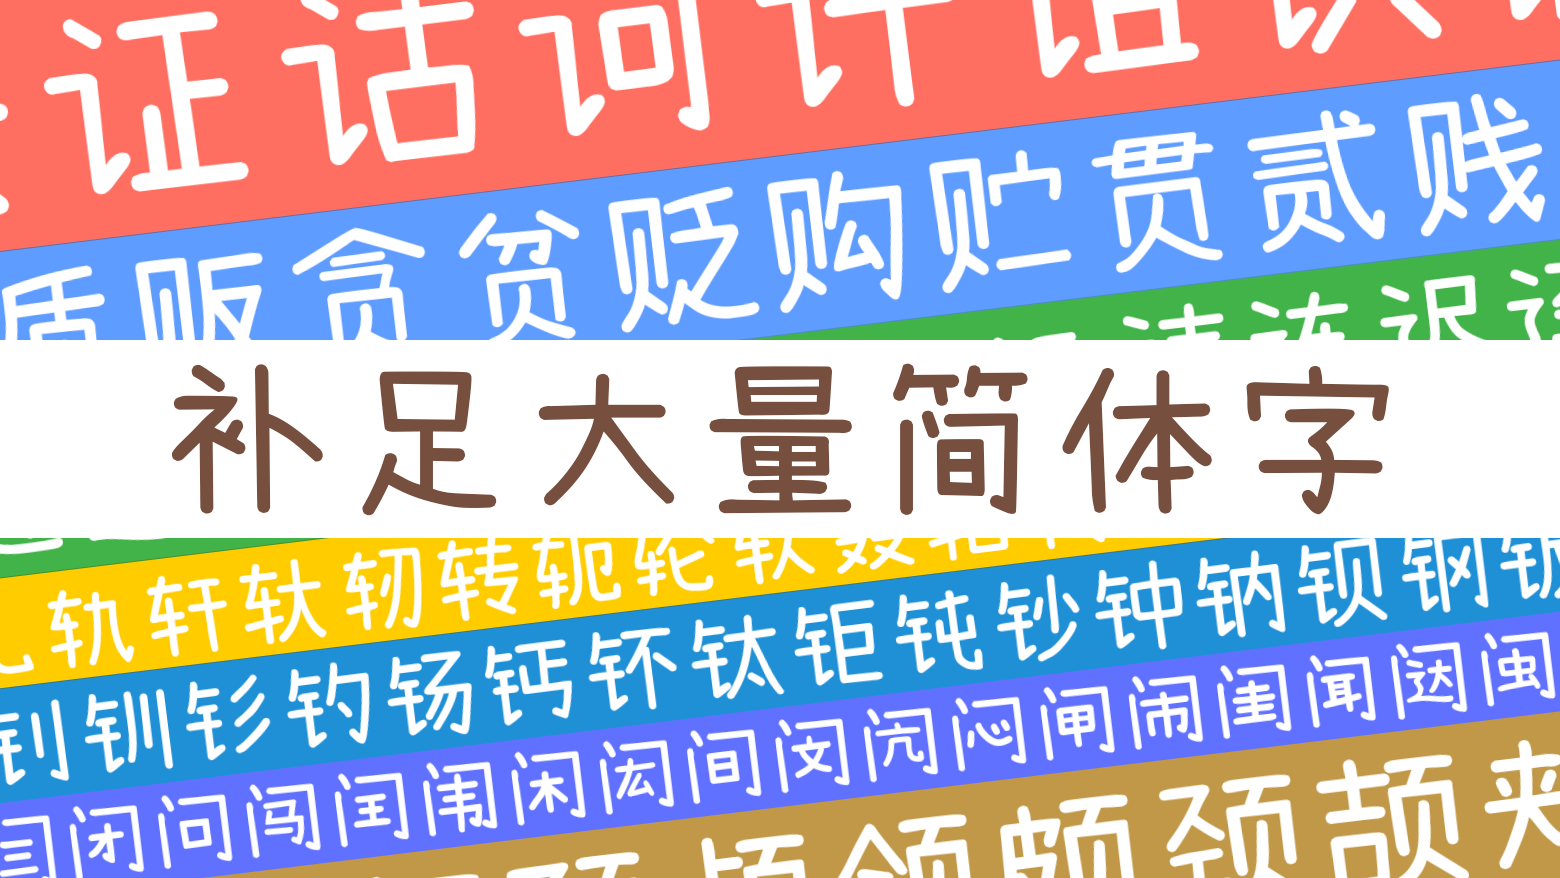 小濑字体 - 免费商用版权中文字体下载